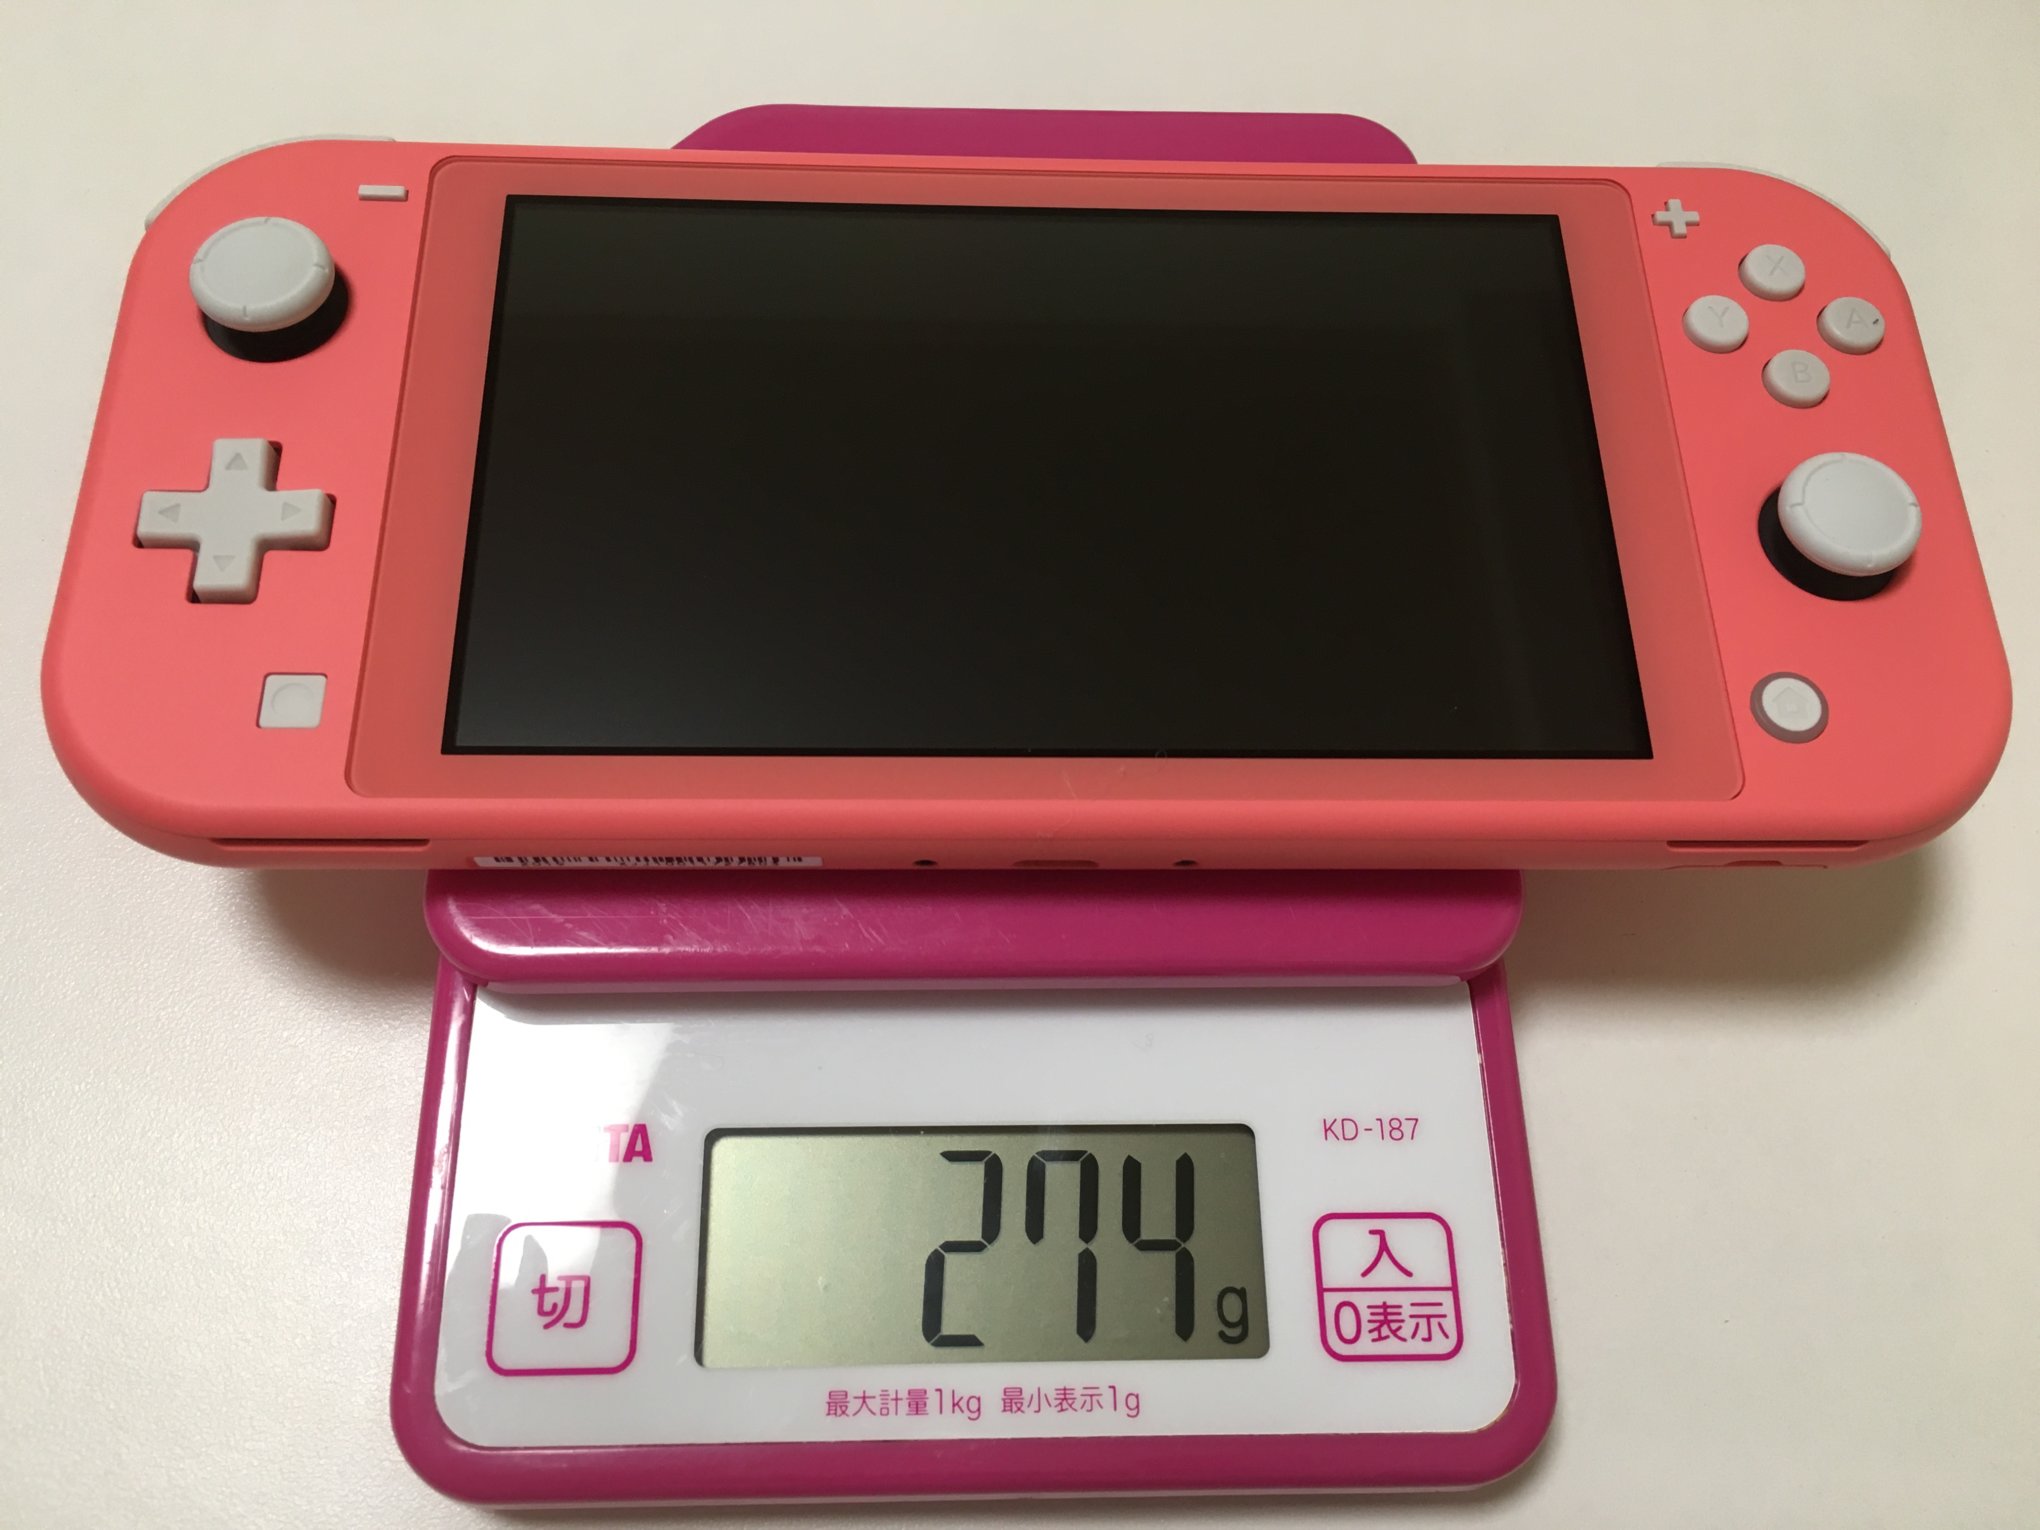 ホビー Nintendo スイッチライト コーラル ピンクの通販 by アジャ's